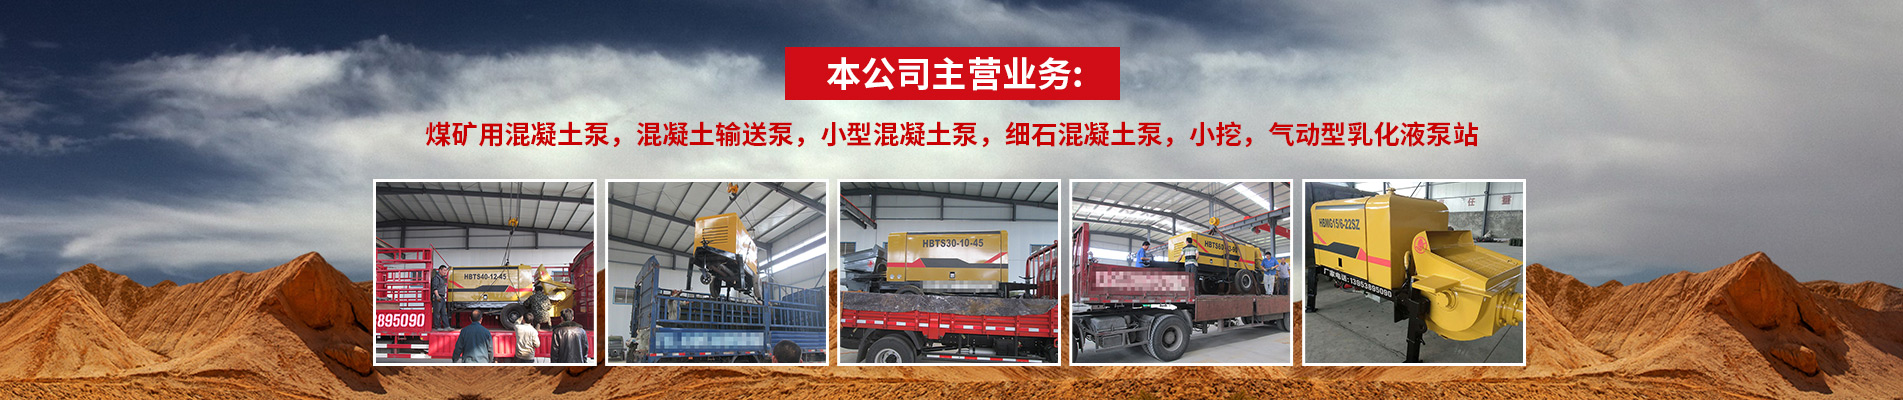 重庆江北矿用小型混凝土泵,实行两年质保